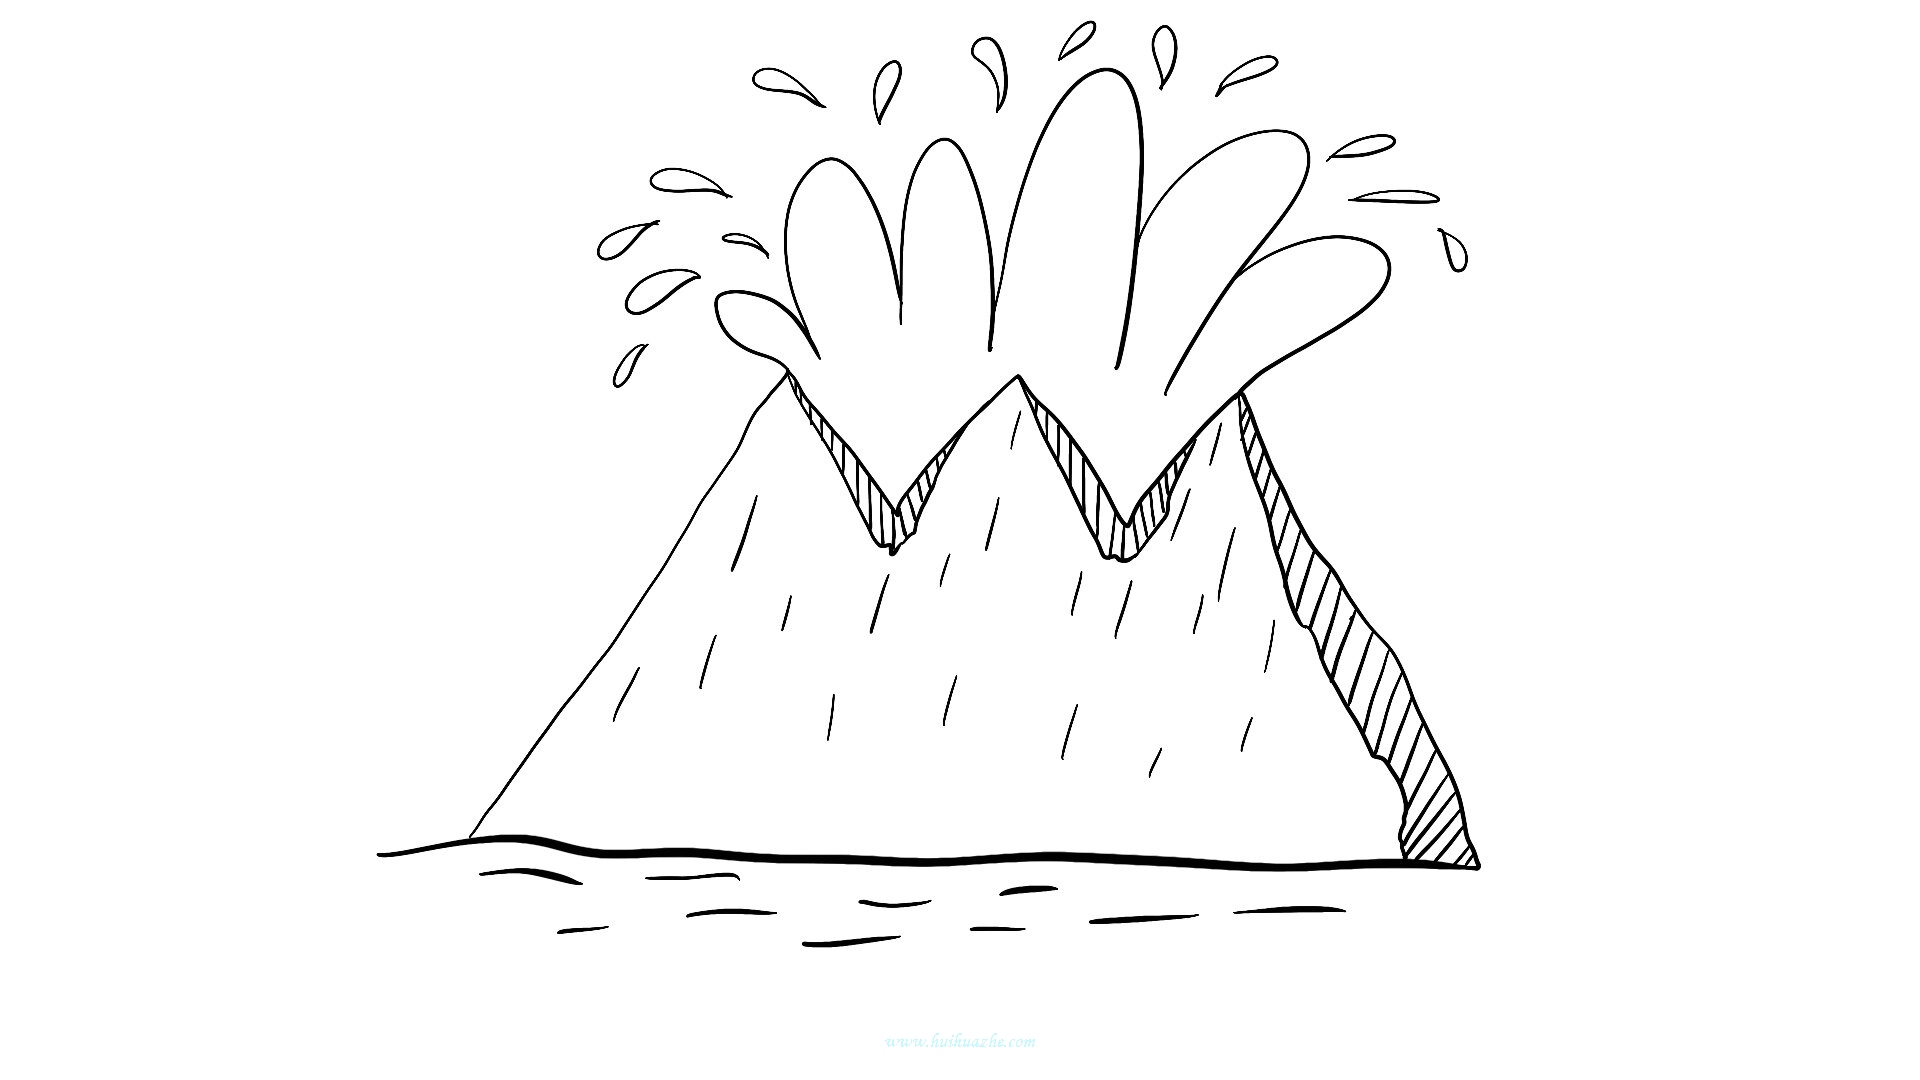 卡通風格棕色噴發火山剪貼畫, 火山剪貼畫, 火山爆發, 剪貼畫素材圖案，PSD和PNG圖片免費下載